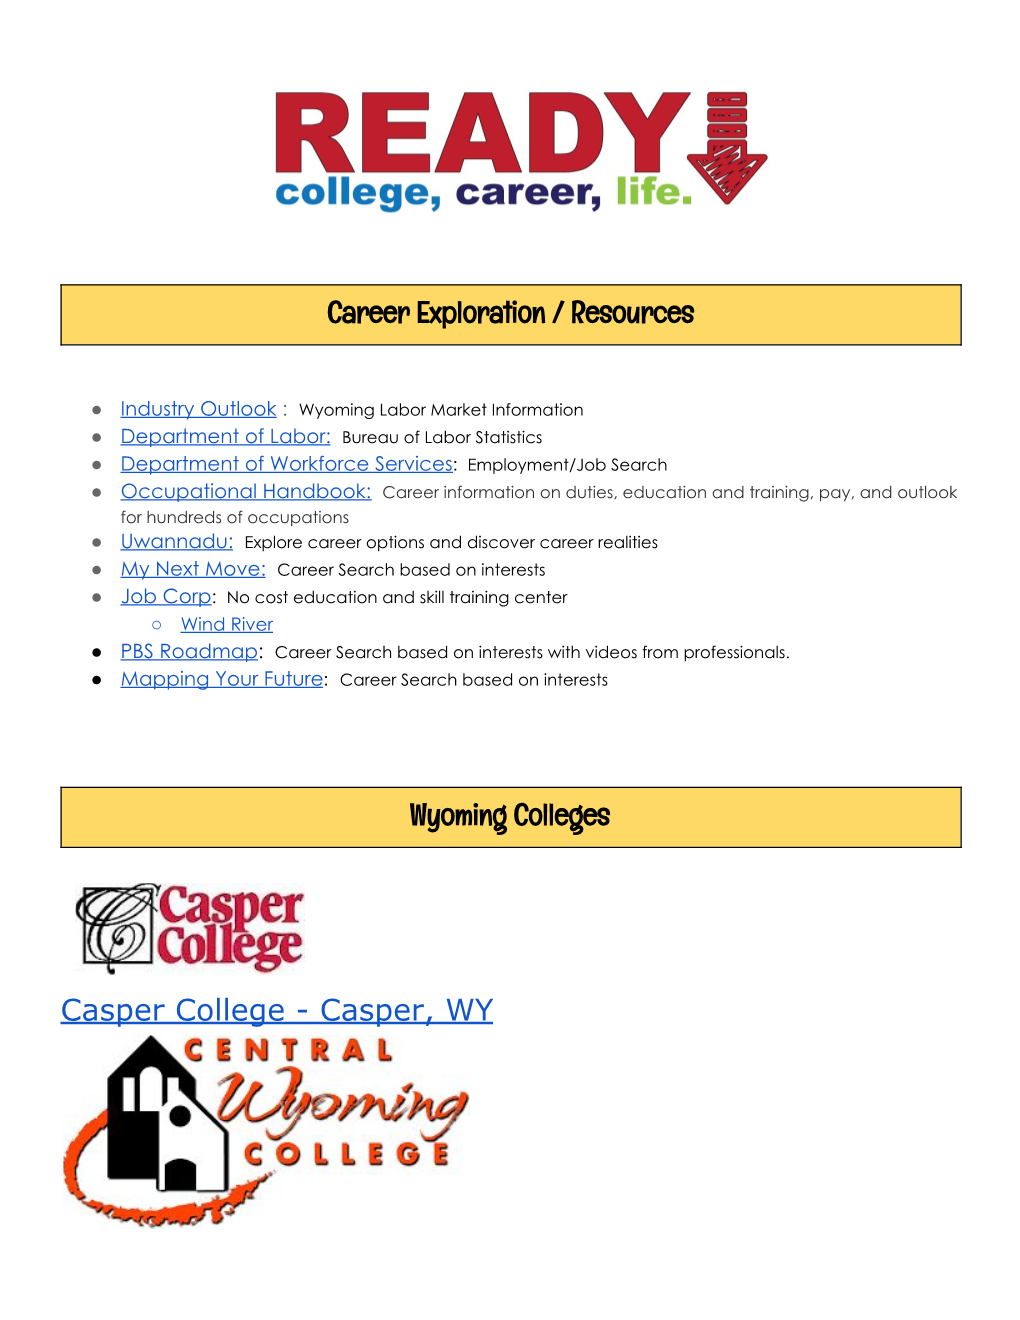 Career Exploration / Resources Wyoming Colleges Casper College